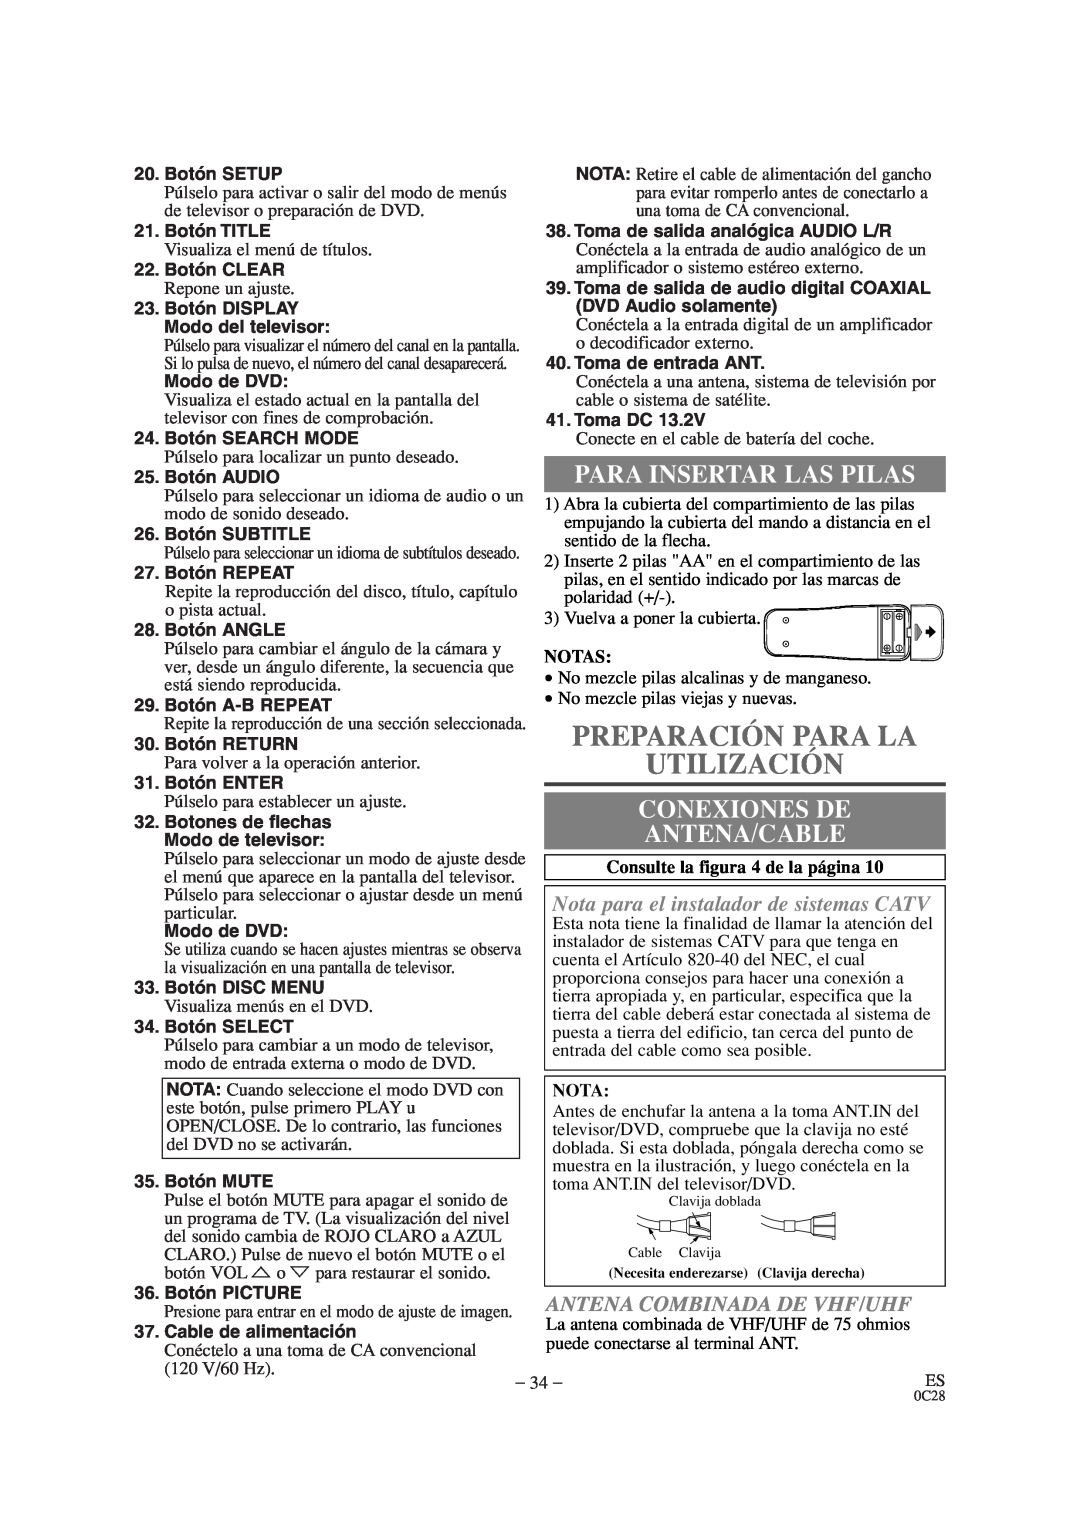 Sylvania SRTD309 owner manual Preparación Para La Utilización, Para Insertar Las Pilas, Conexiones De, Antena/Cable, Notas 